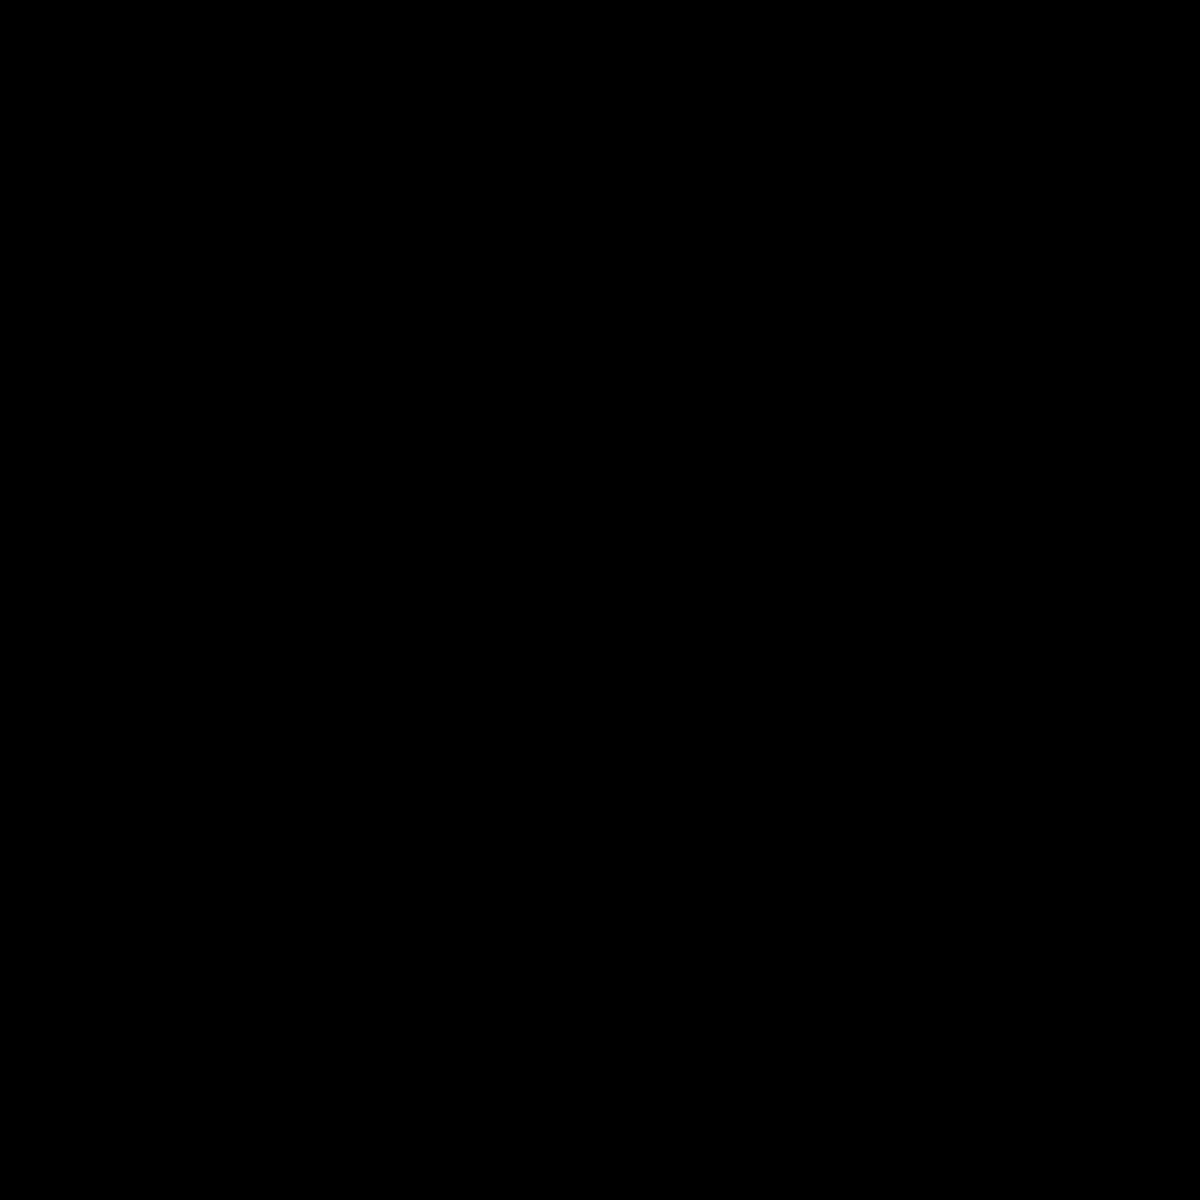 Logotipode La Universidad De Rochester En Blanco Y Negro. Fondo de pantalla